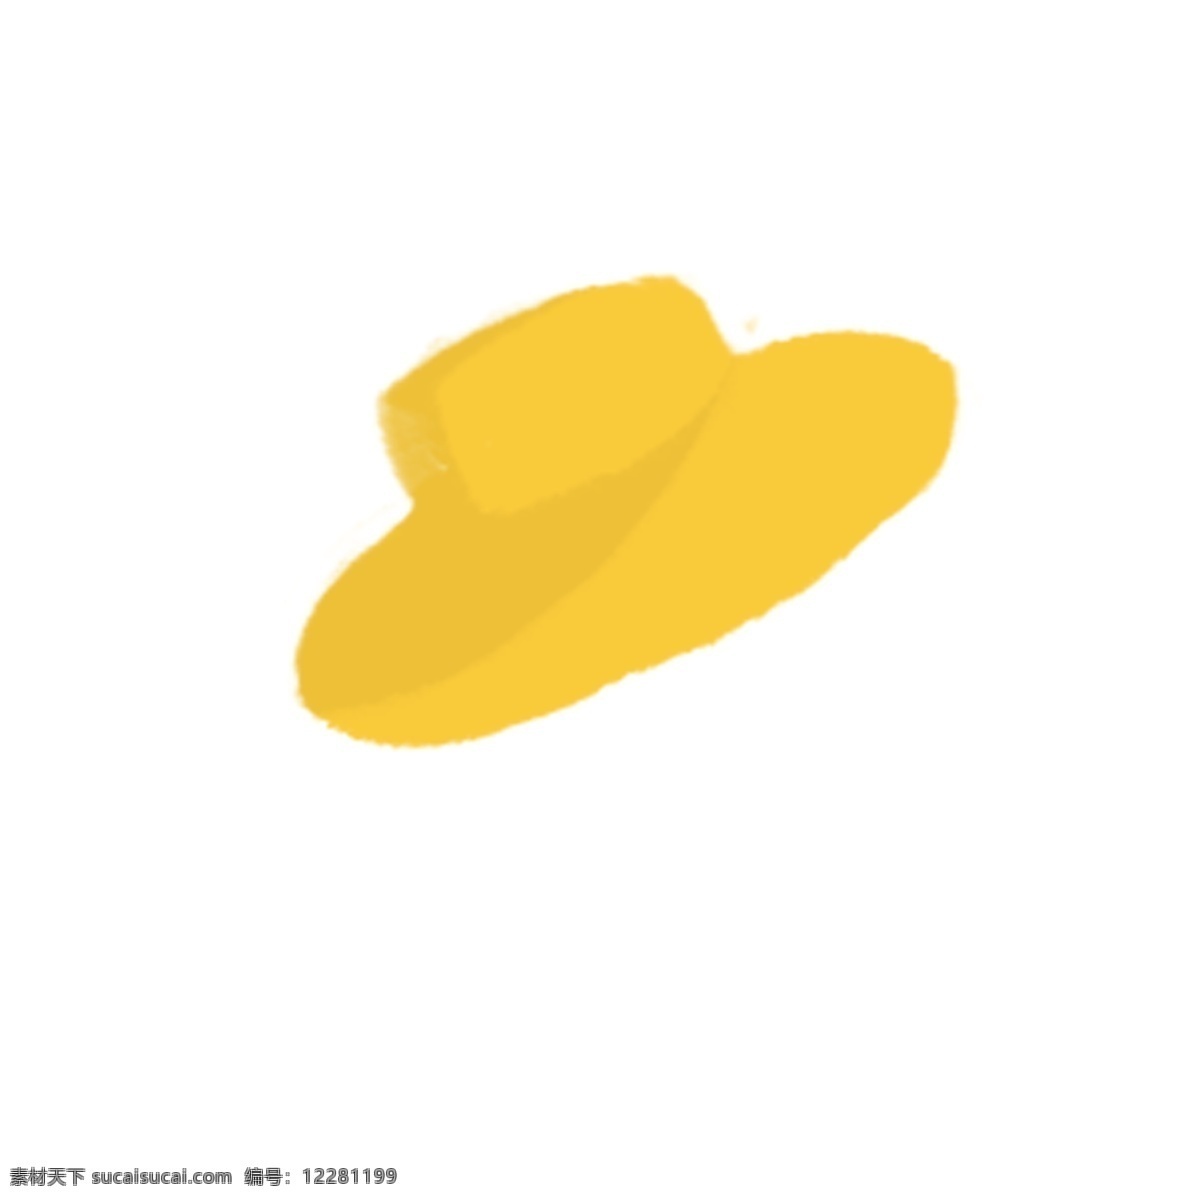 卡通 黄色 遮阳帽 黄色帽子 帽子 帽子图标 卡通插图 创意卡通下载 插图 png图下载